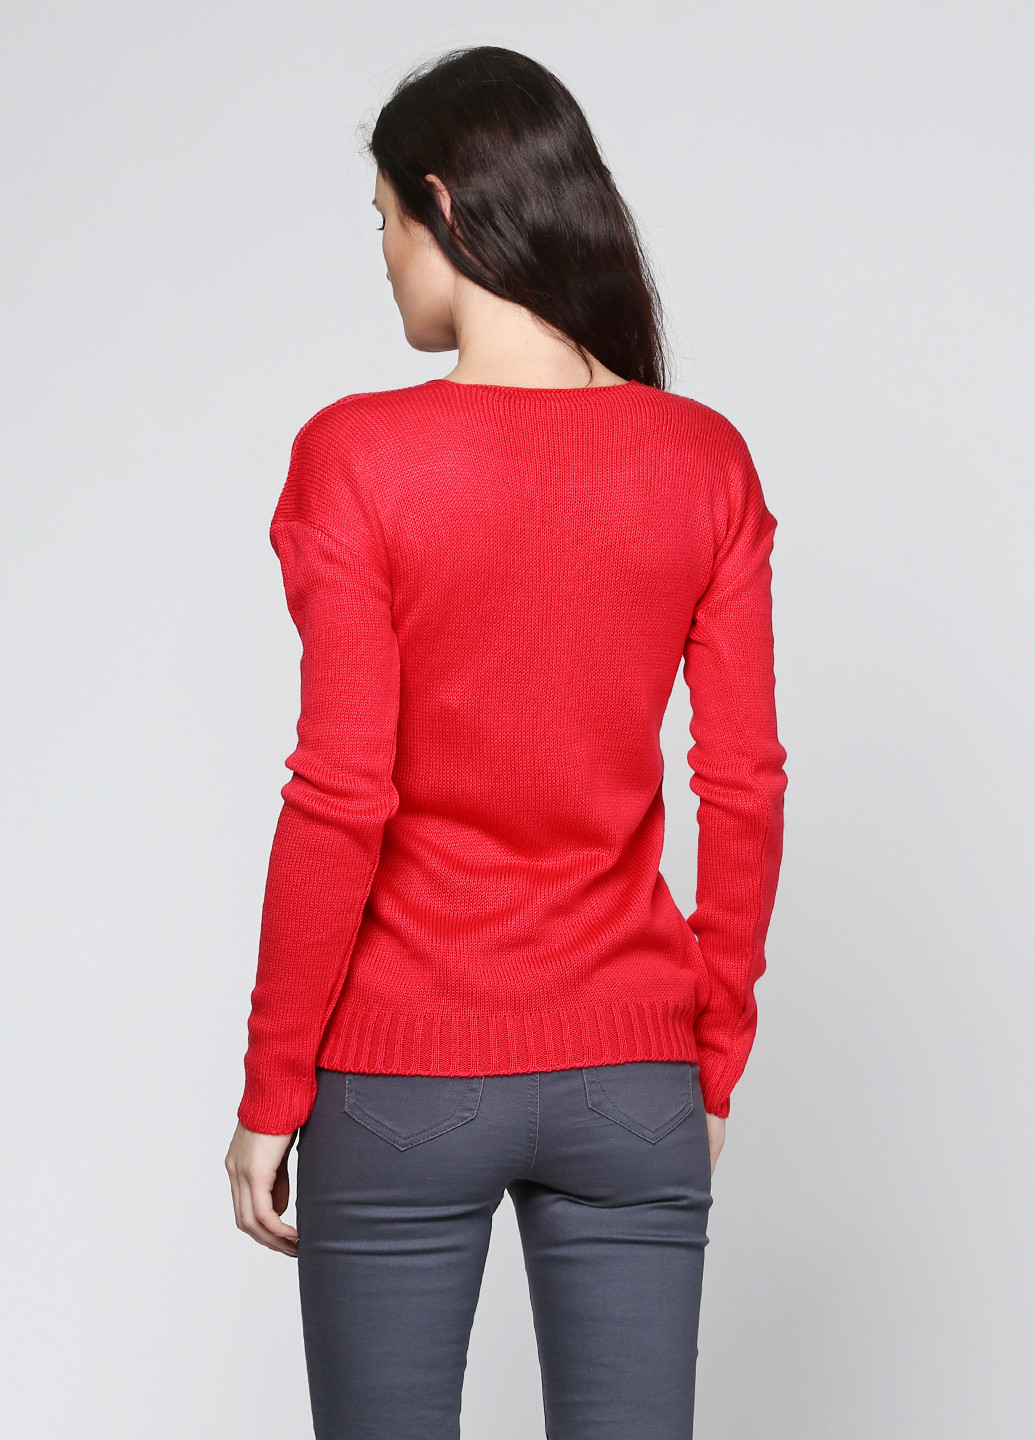 Малиновый демисезонный пуловер пуловер Massimo